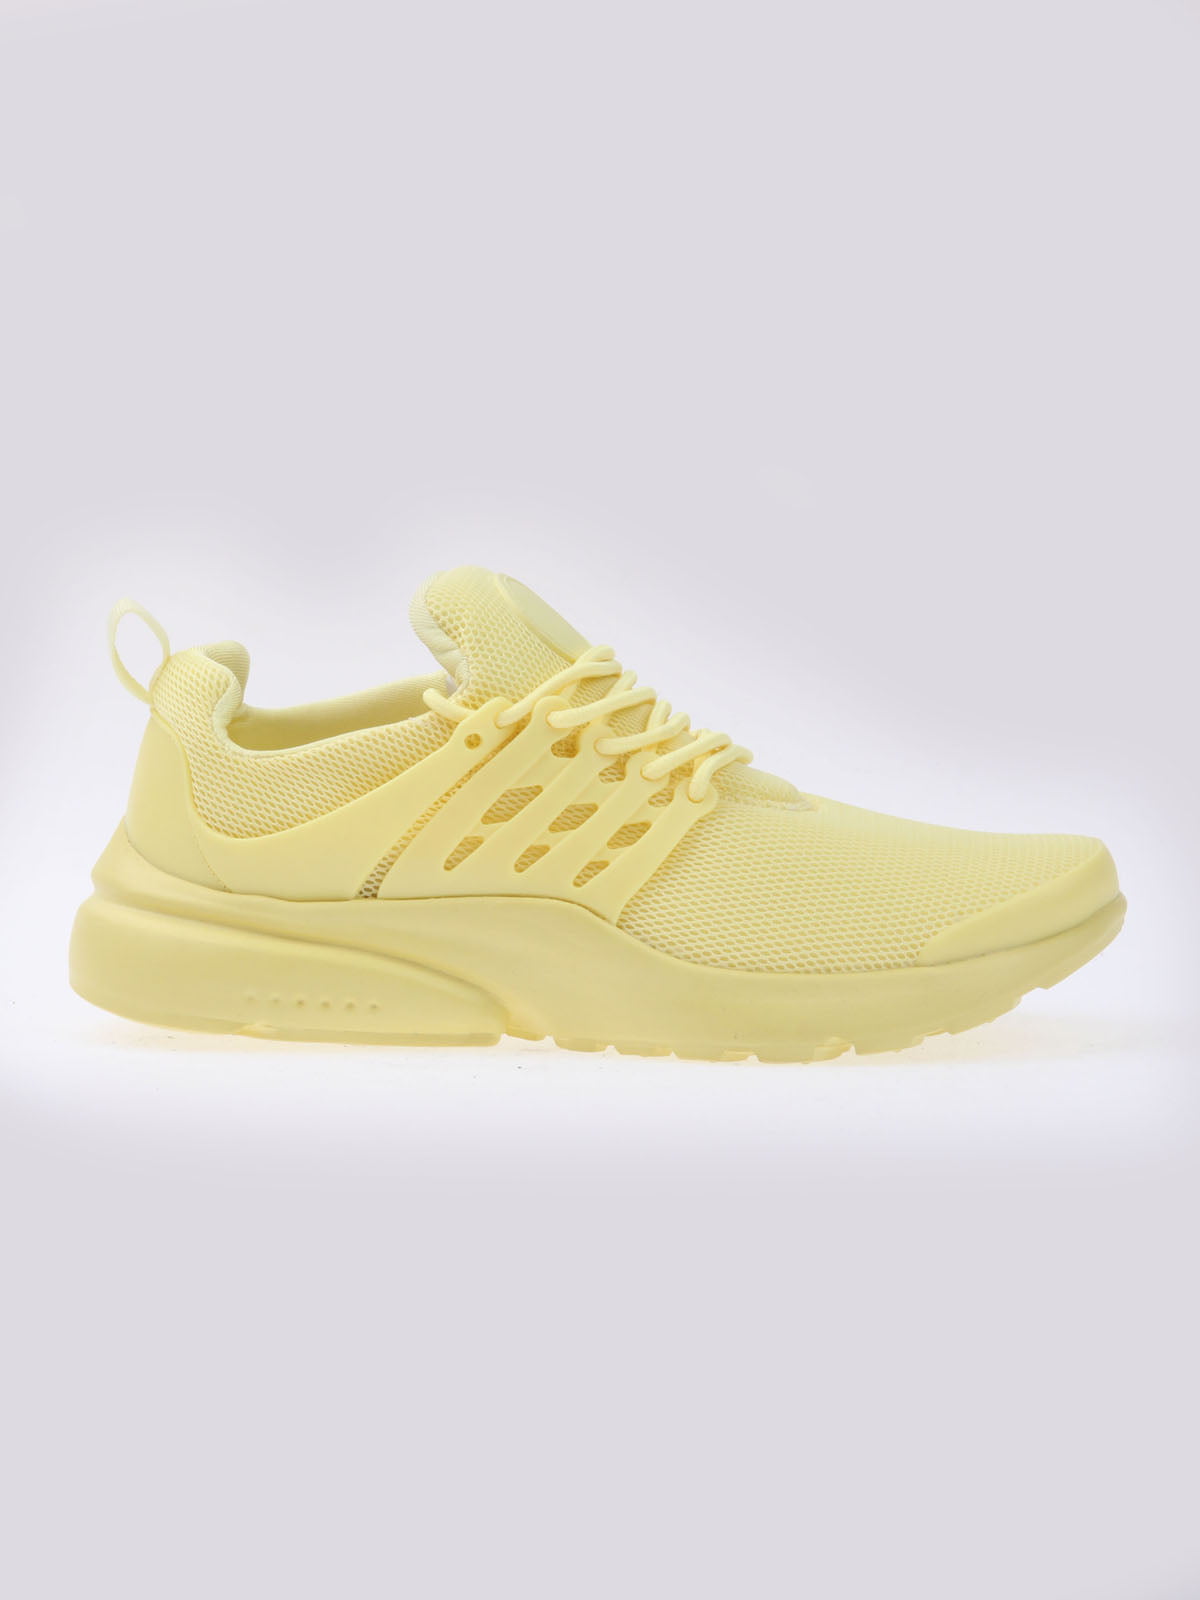 Кросівки жовті | 5790328